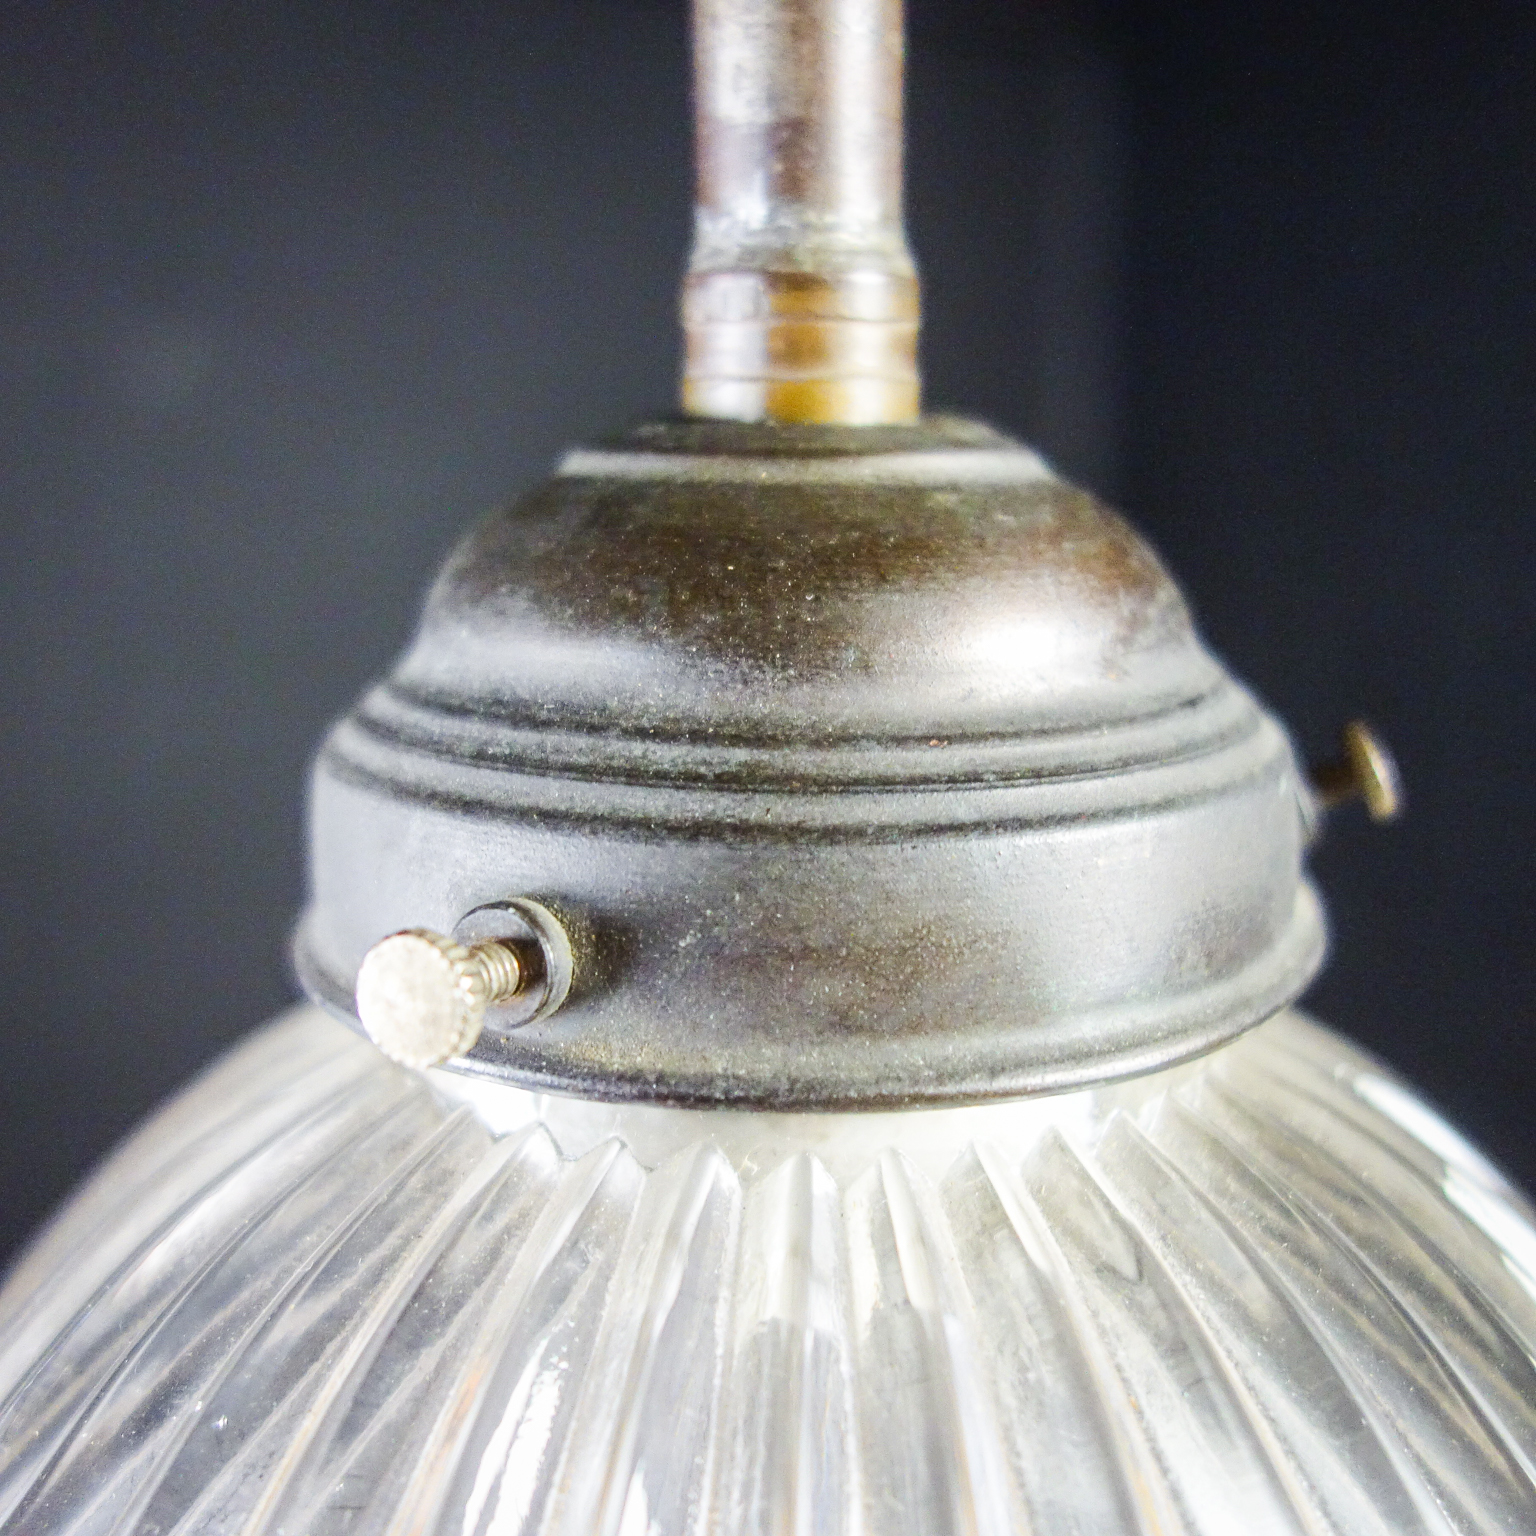 betreuren Verdragen eetpatroon Antieke hanglamp - Holophane Stijl - Jaren 20 - Assortiment - Vivre  Interieur Authentique